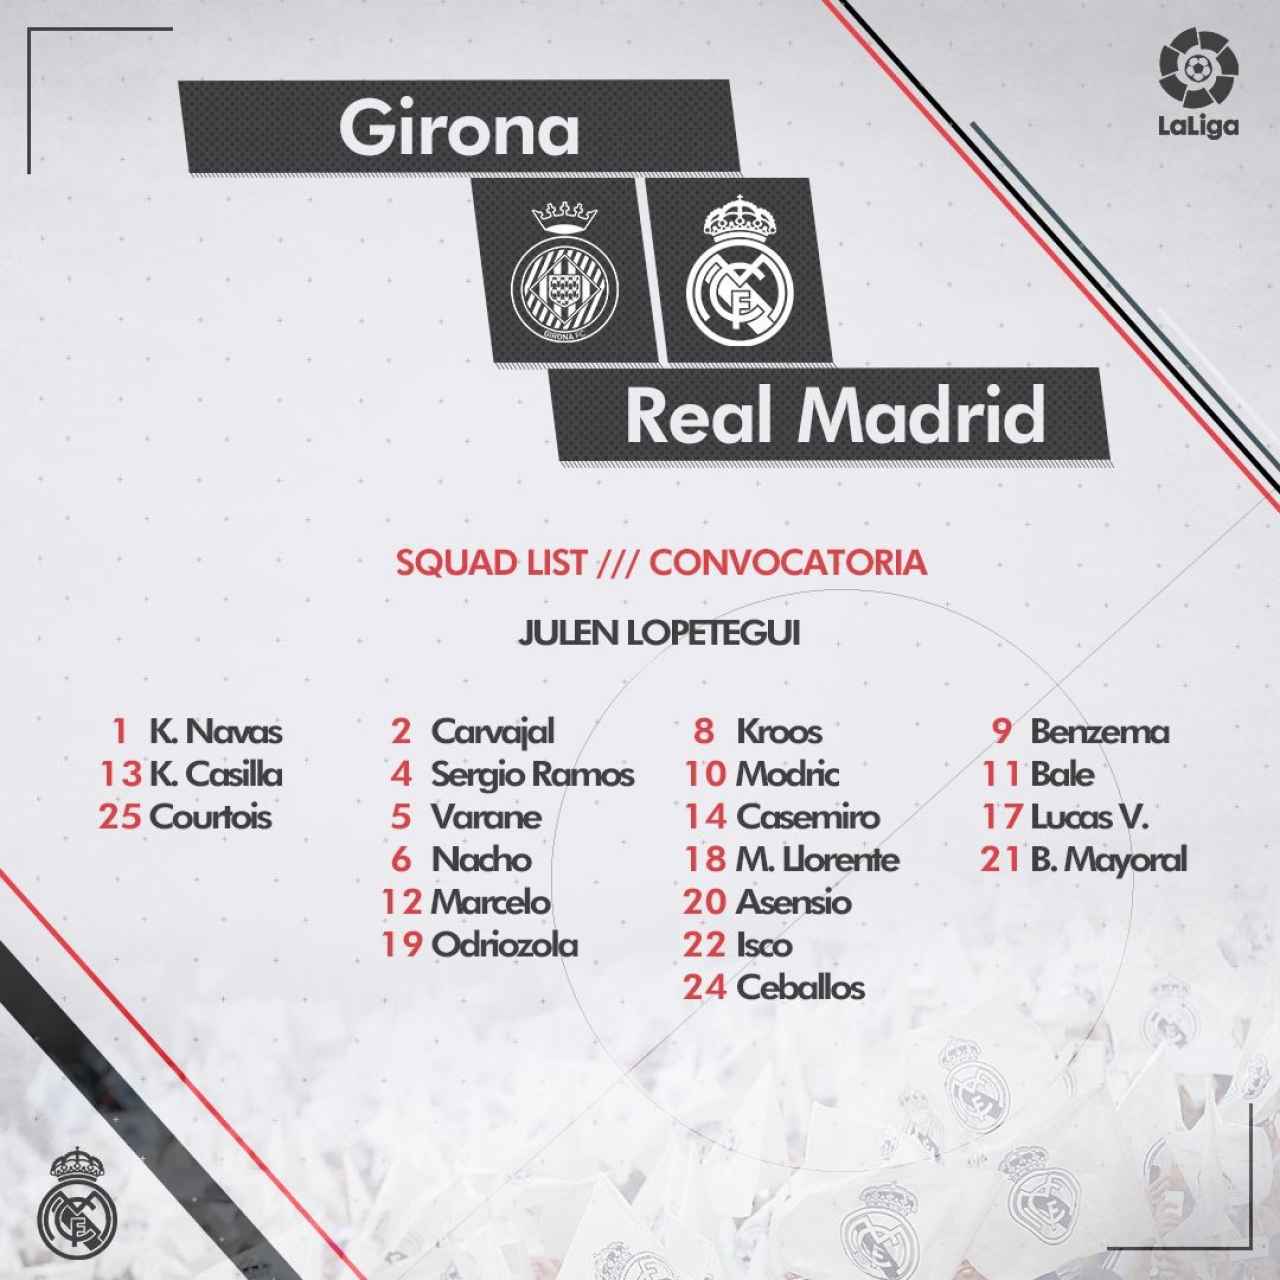 Convocatoria del Real Madrid para el Girona